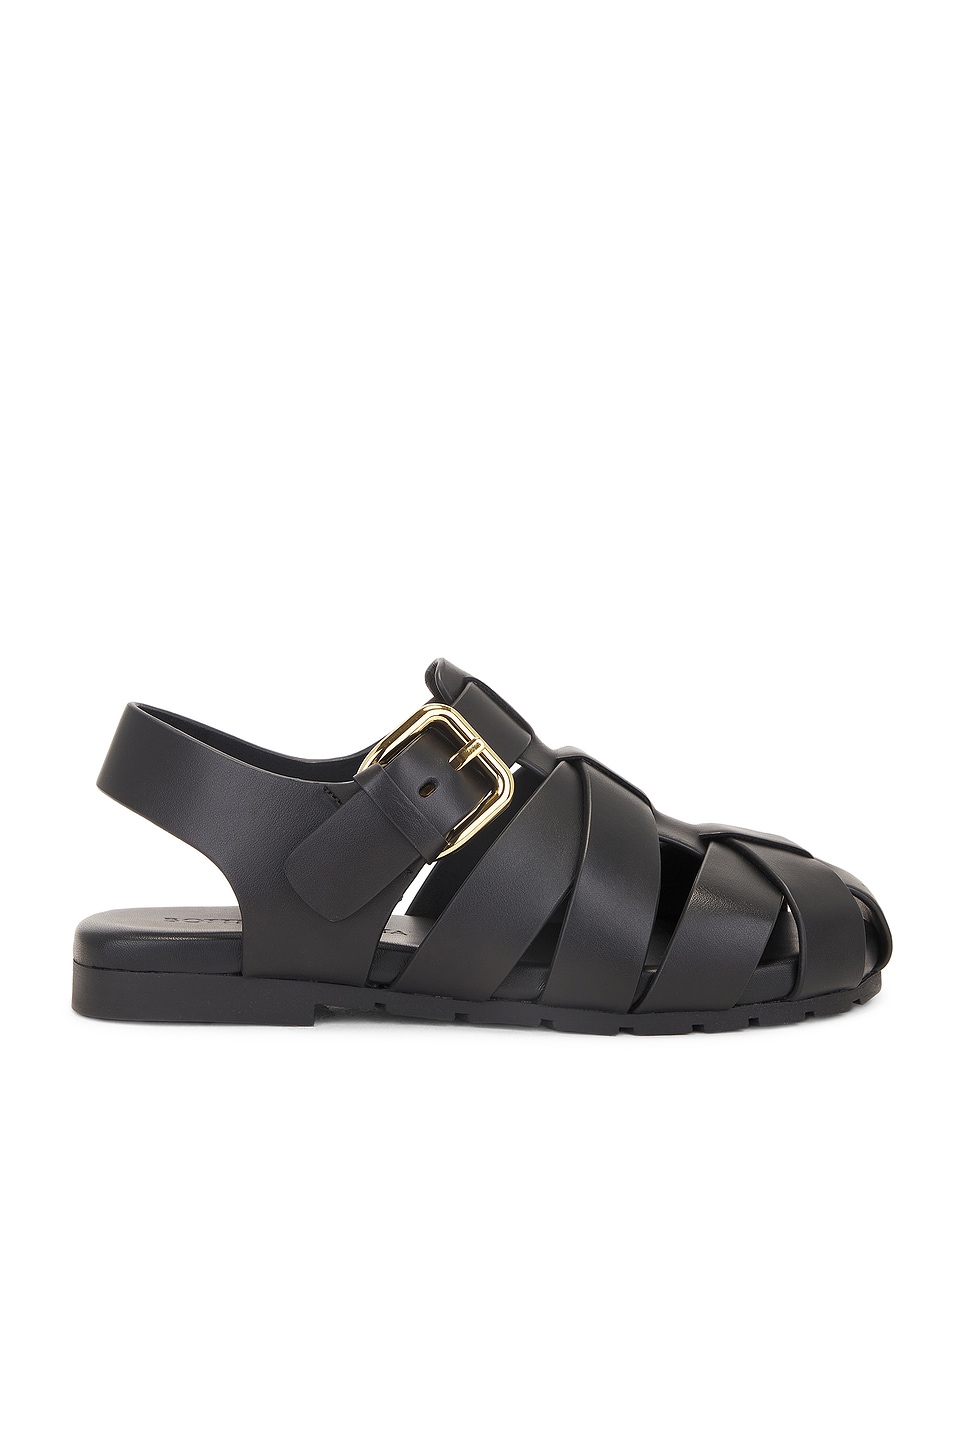 Image 1 of Bottega Veneta Alfie Flat Sandal in Black